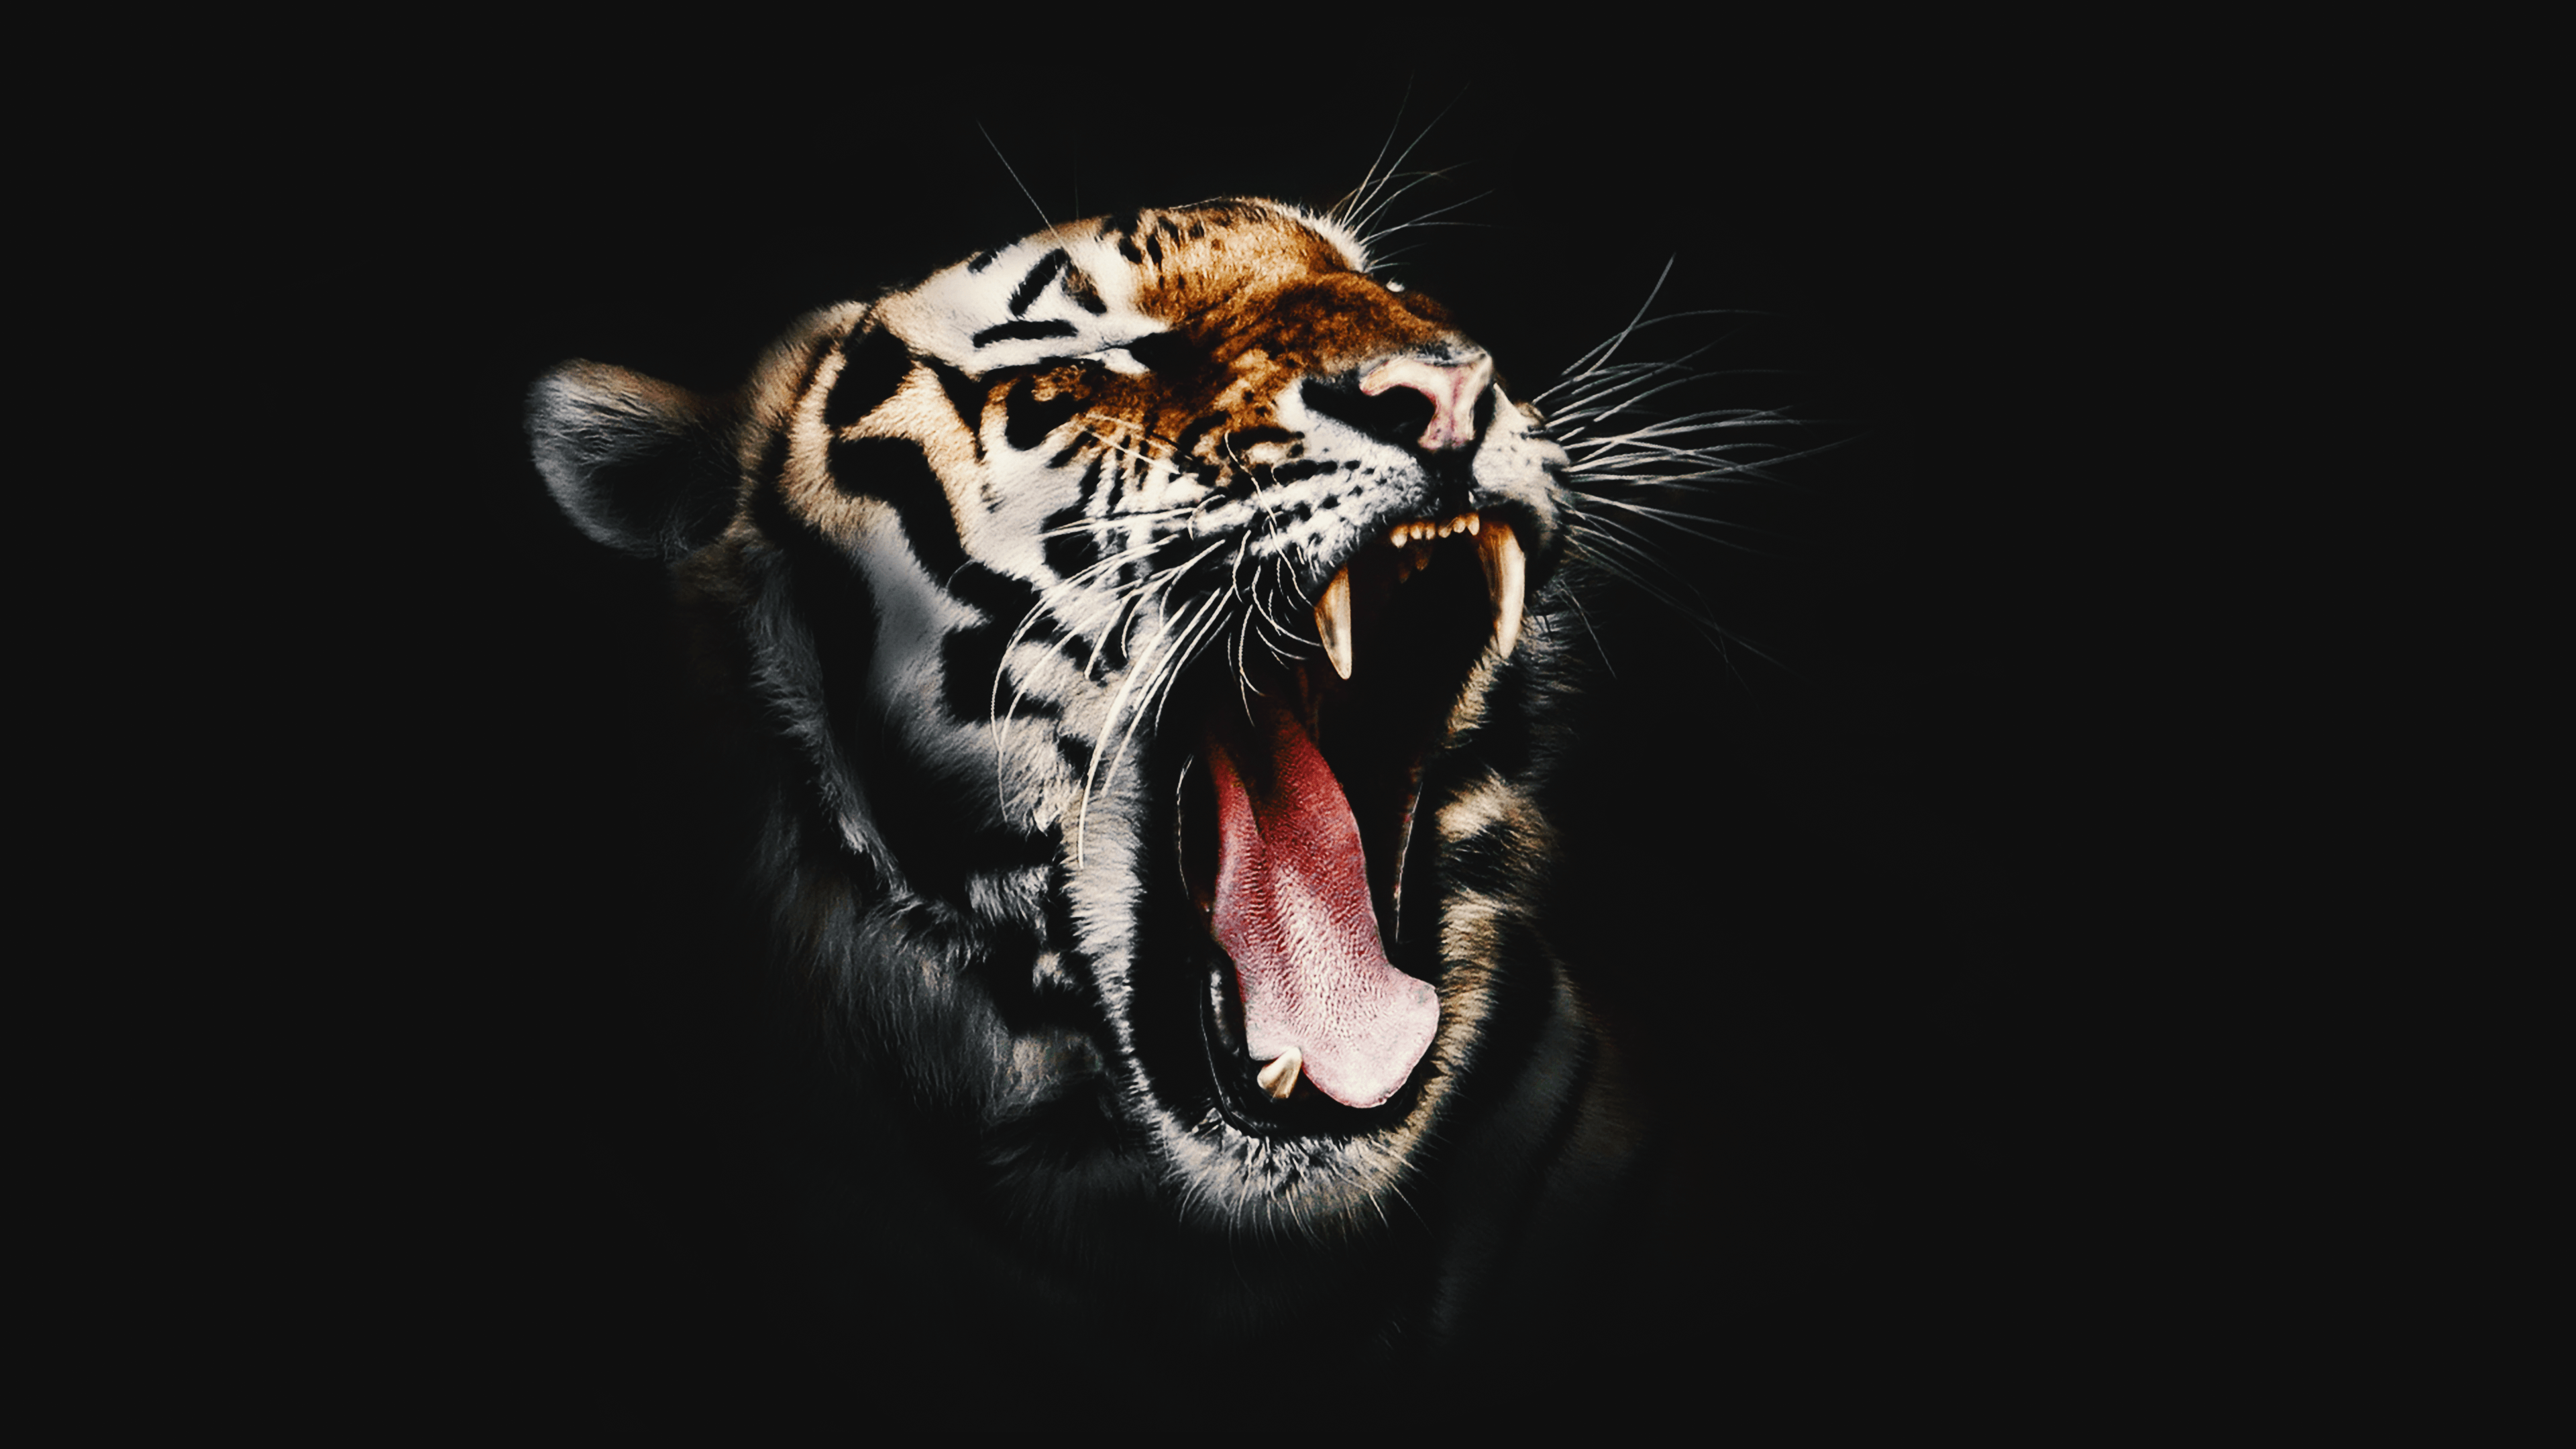 Download Free HD Wicked Tiger Desktop Wallpaper In 4K .0287